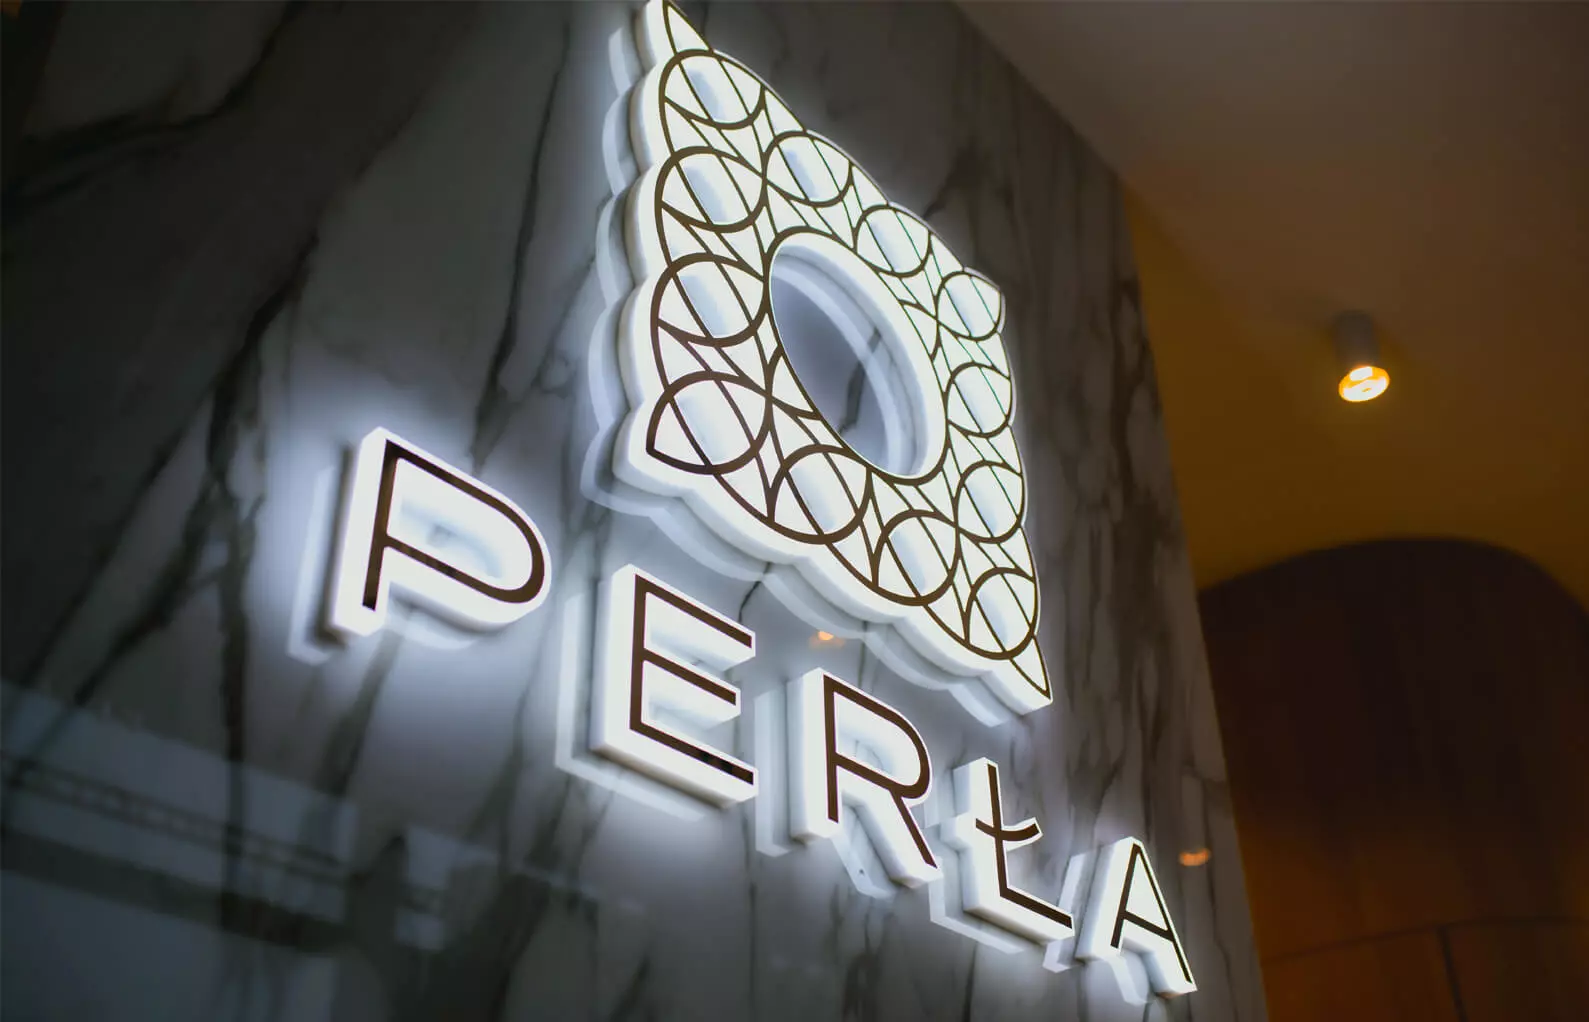 Perla - Logo illuminato con lettere a LED illuminate lateralmente